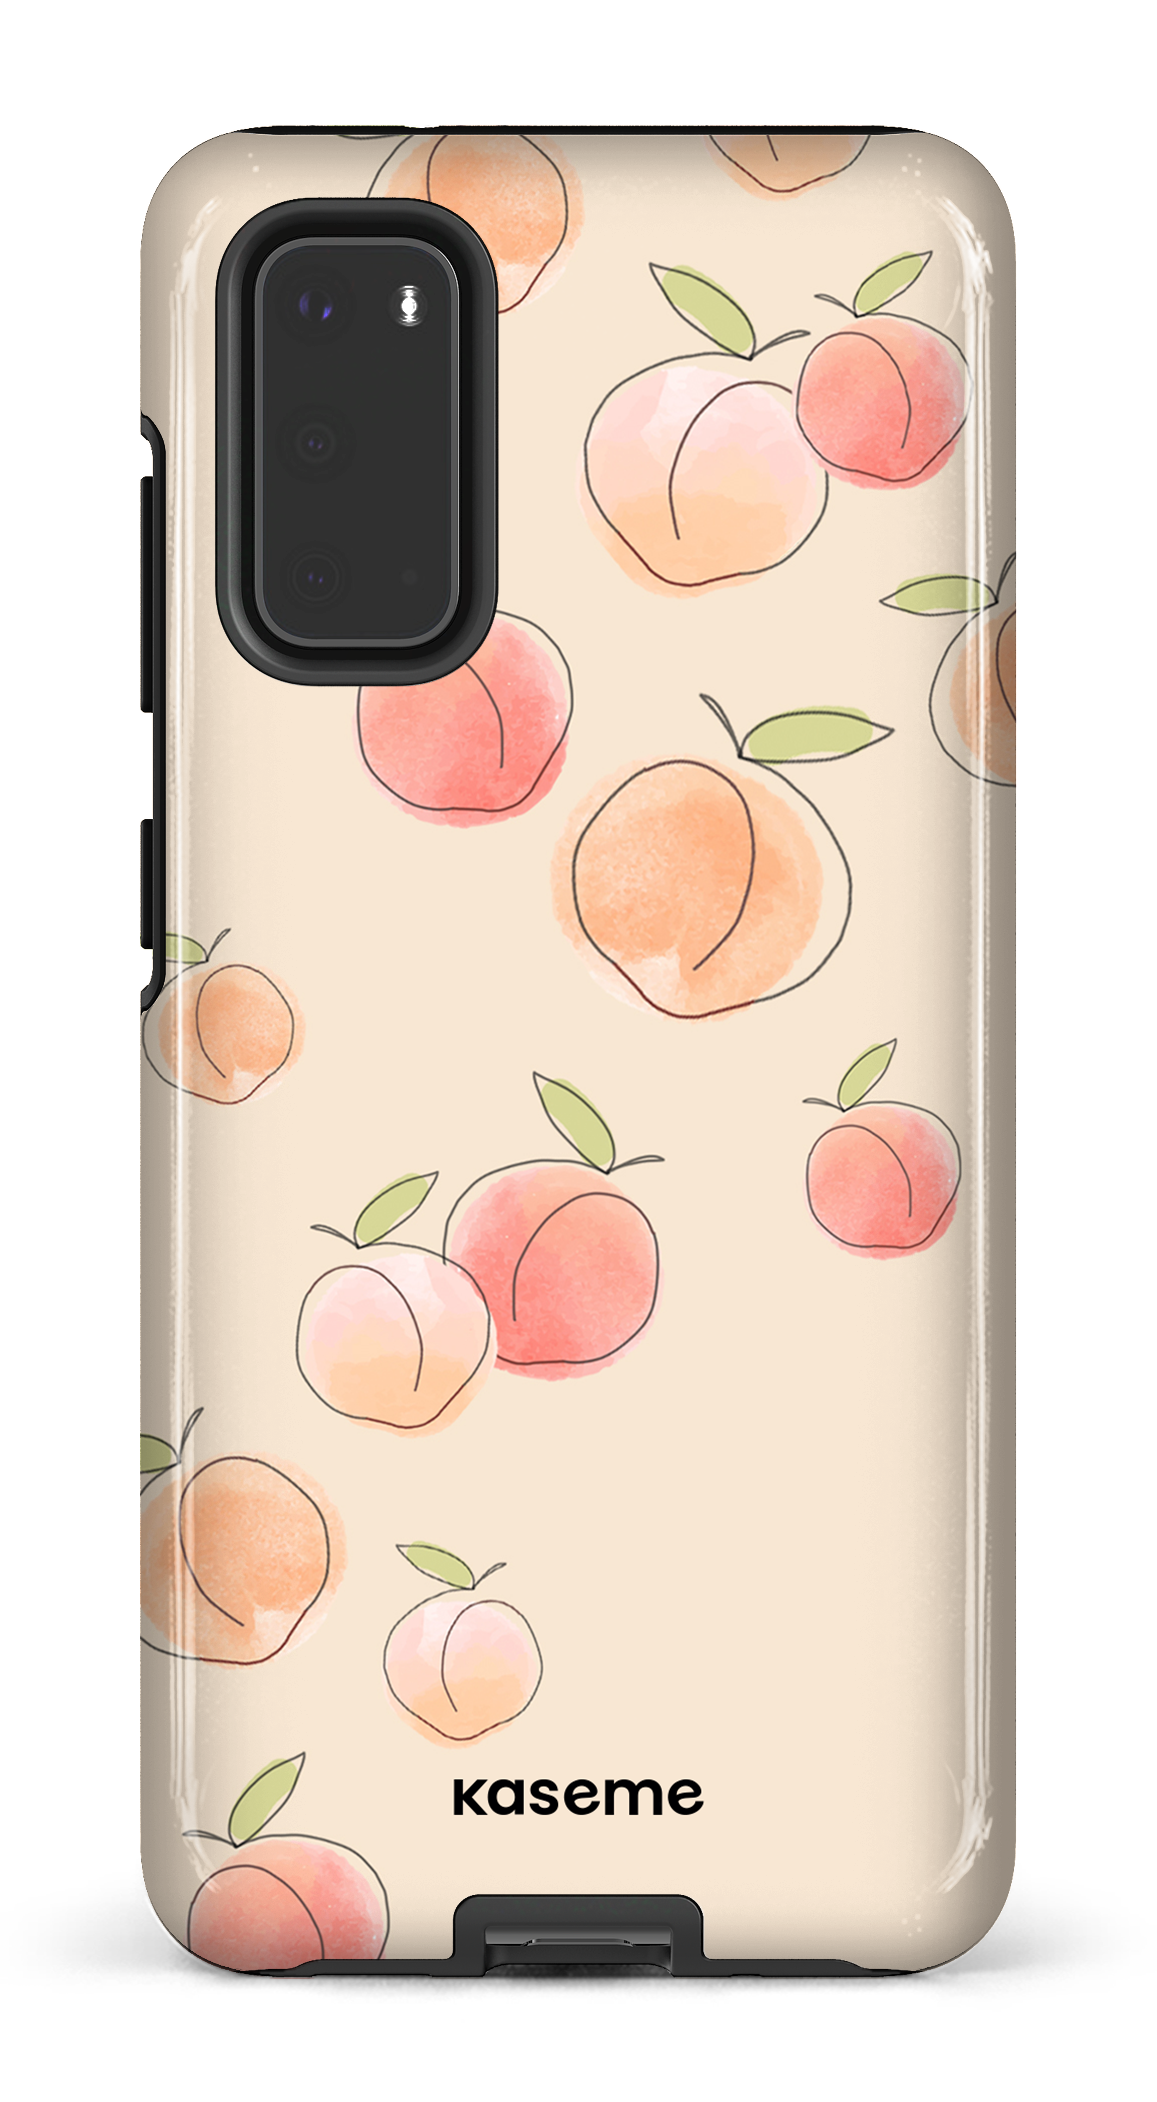 Peachy - Galaxy S20